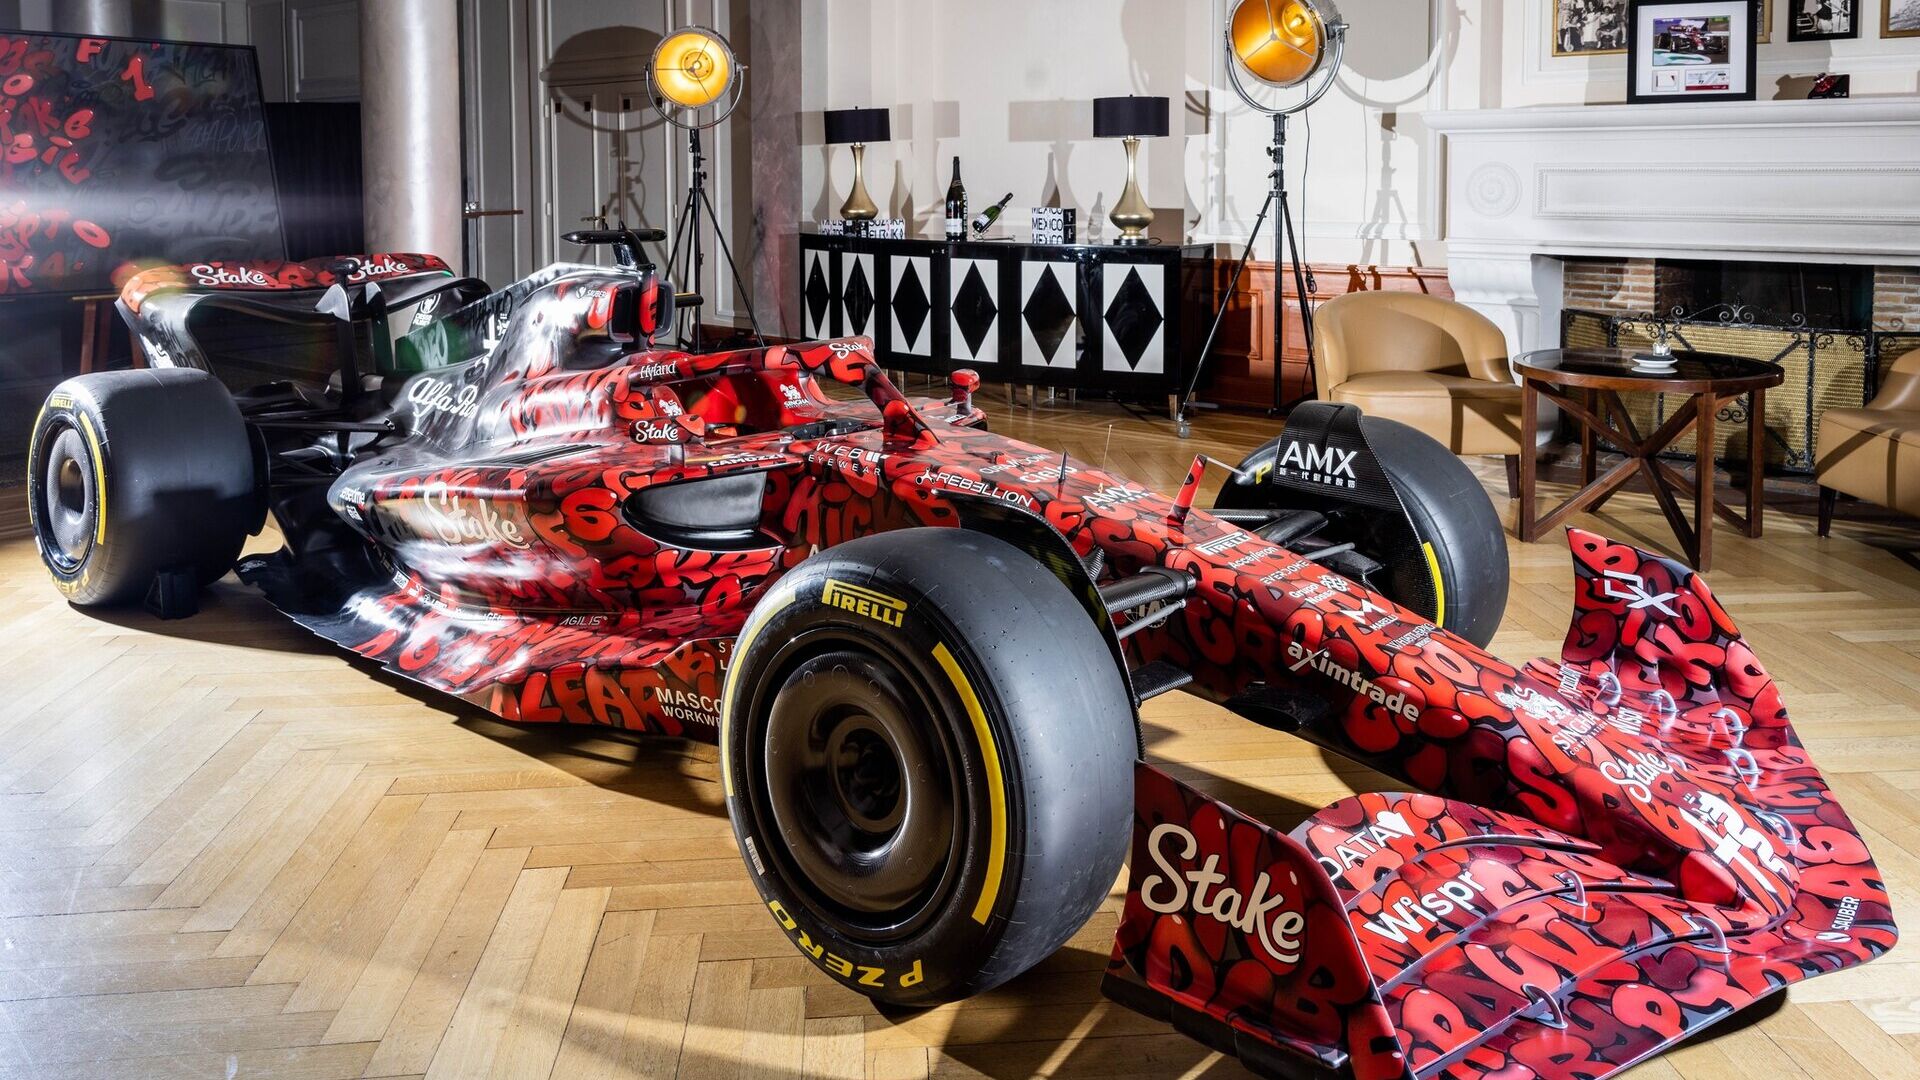 Alfa Romeo: Alfa Romeo F1 Team Stake ekibi, taraftarları takıma yaklaştırmayı ve 2023 sezonunun başlangıcını kutlamayı amaçlayan bir proje oluşturmak için Basel'de faaliyet gösteren dünyaca ünlü Alman sanatçı BOOGIE ile iş birliği başlattı.